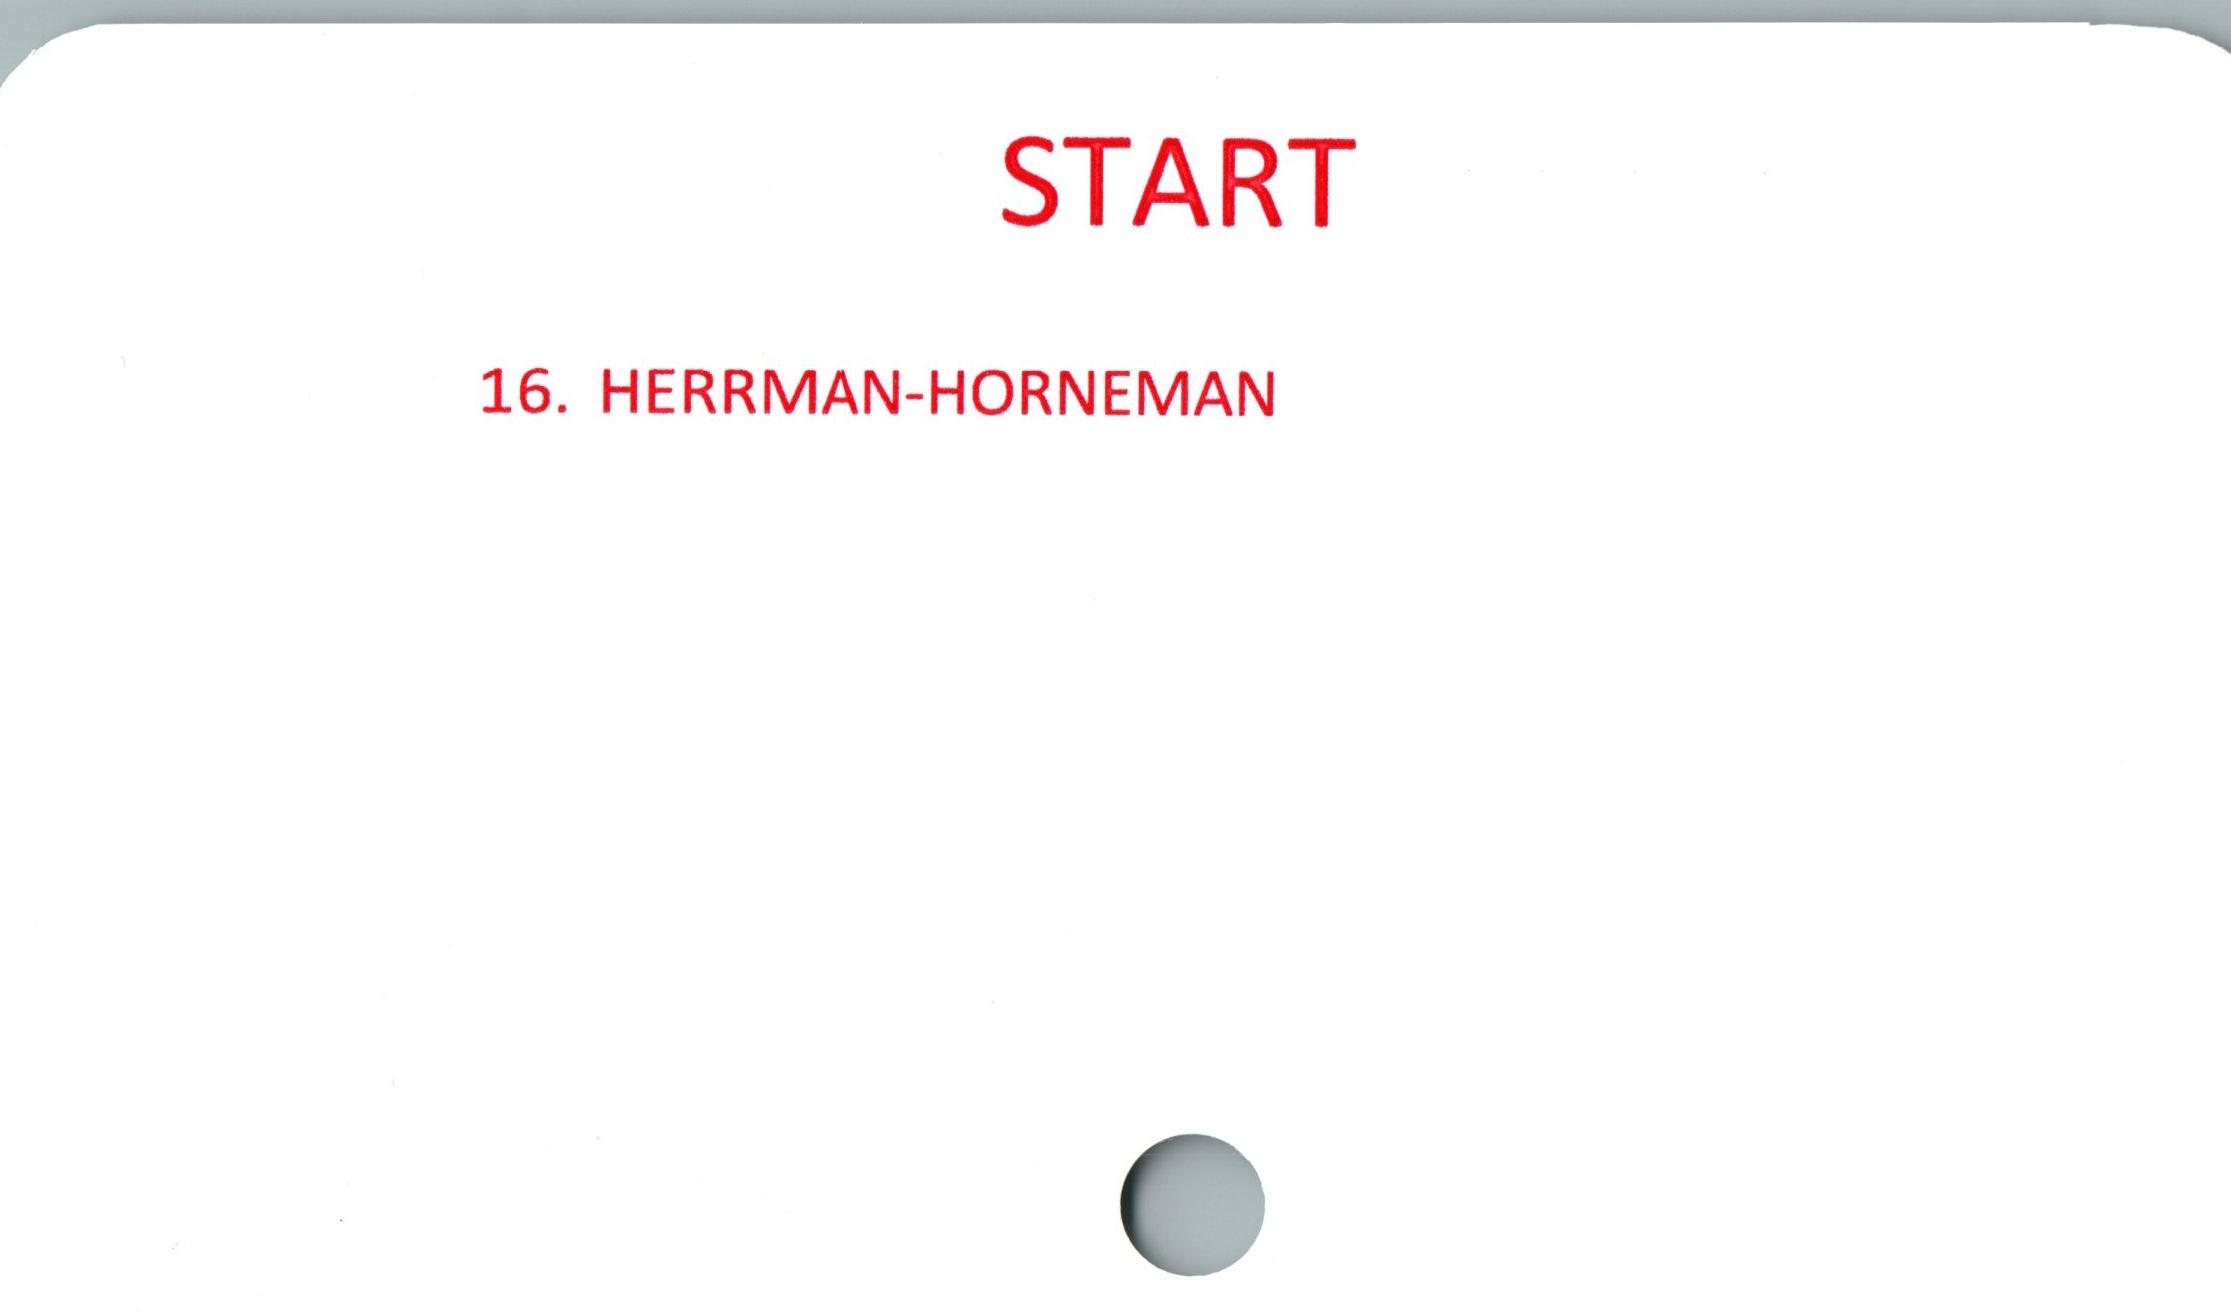  ﻿START

16. HERRMAN-HORNEMAN